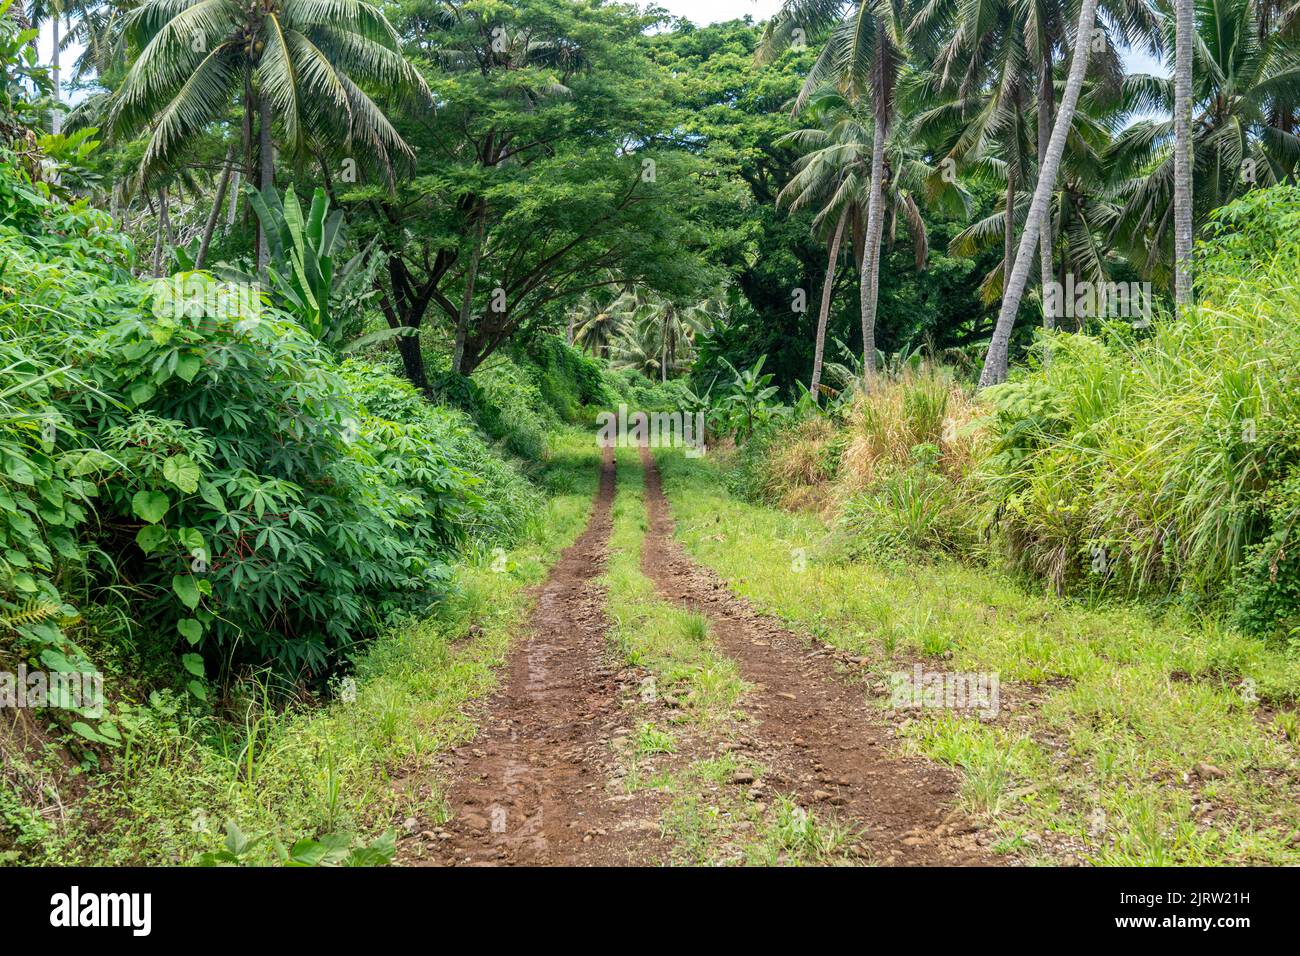 Un camino de tierra en las tierras altas del pacífico Sur muestra la vegetación típica de esta zona. Foto de stock